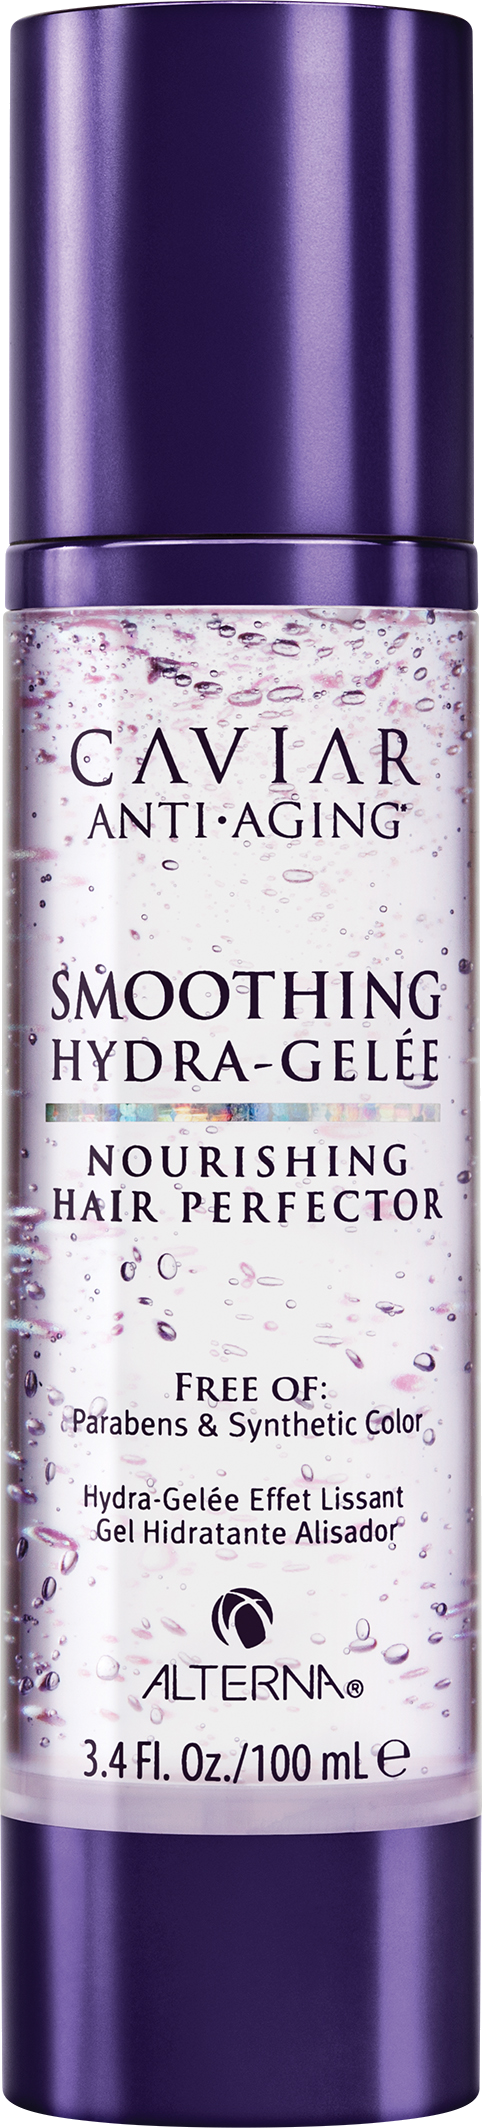 Легкий гель для увлажнения и разглаживания волос, Alterna Caviar Anti-Aging Smoothing Hydra-Gelee Nourishing Hair Perfector